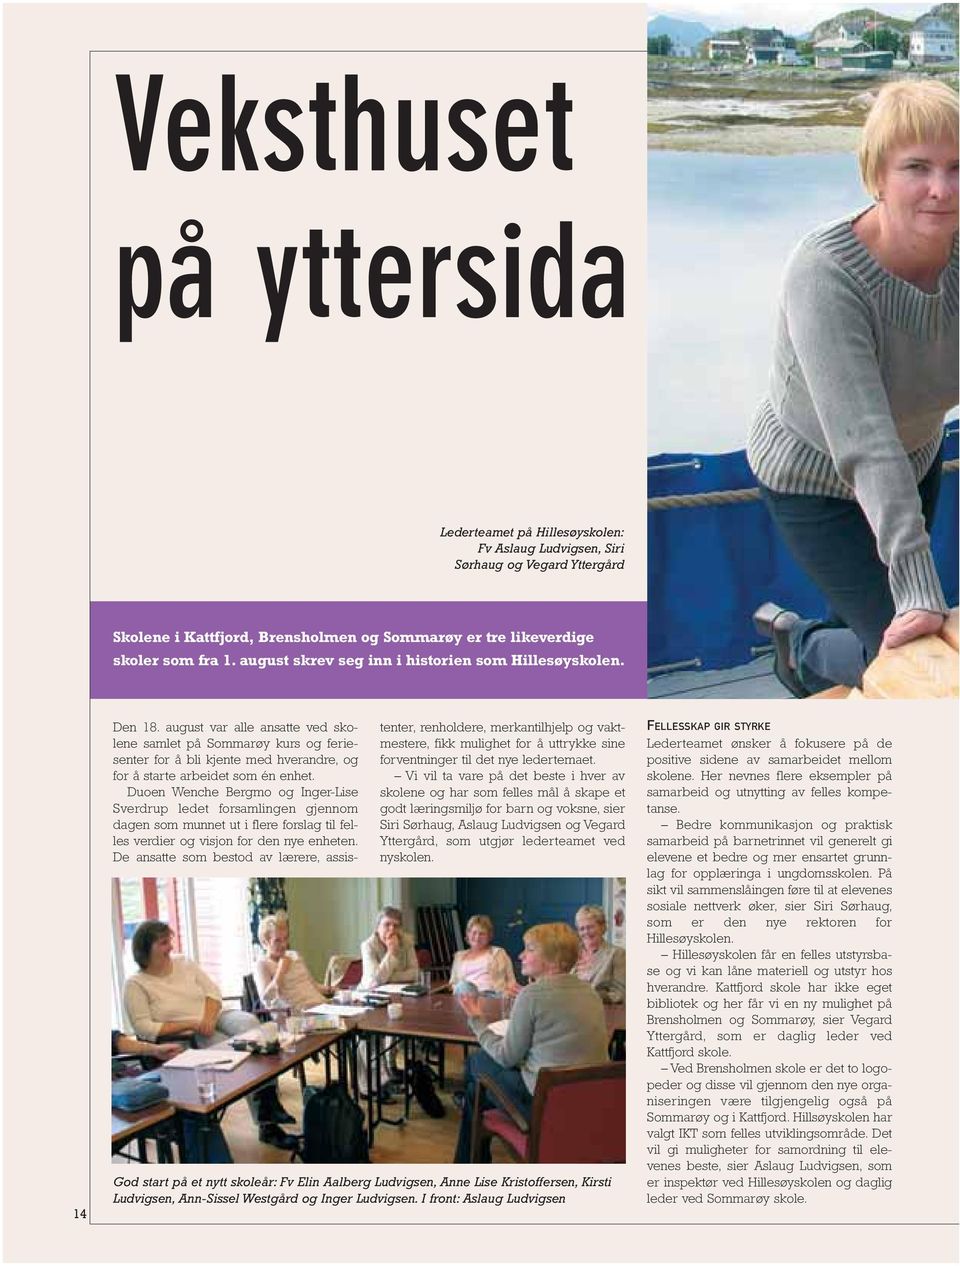 august var alle ansatte ved skolene samlet på Sommarøy kurs og feriesenter for å bli kjente med hverandre, og for å starte arbeidet som én enhet.